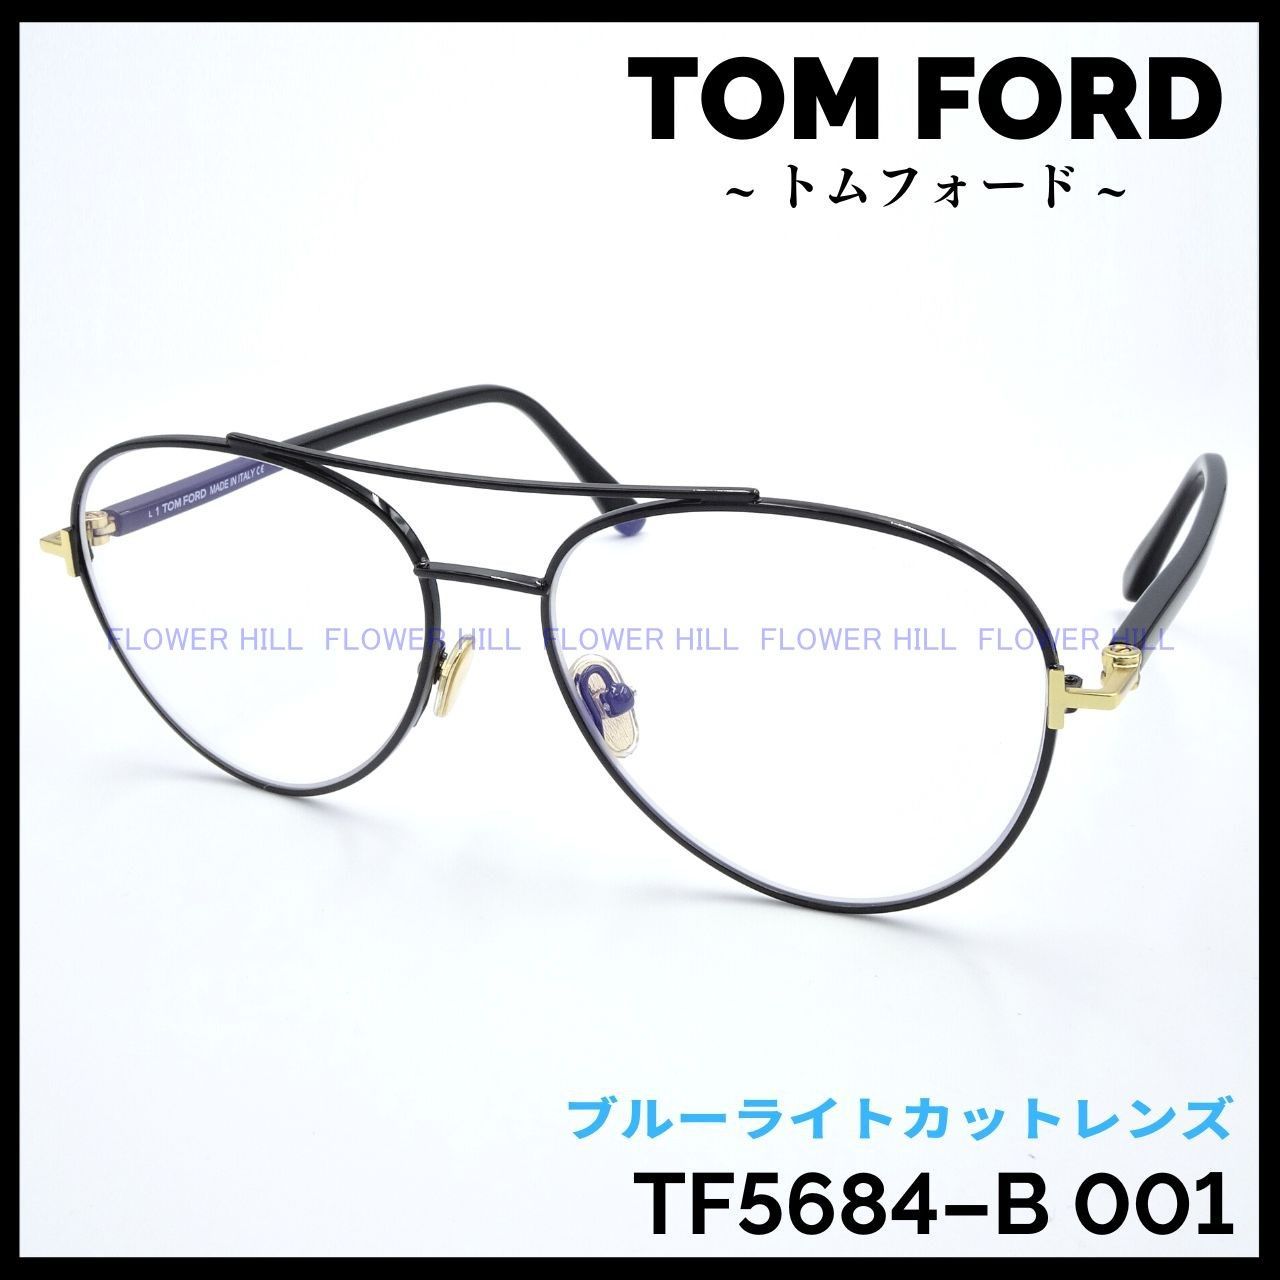 TOM FORD トムフォード TF5684-B 001 メガネ フレーム ブラック ブルーライトカットレンズ ダブルブリッジ イタリア製 メンズ  レディース